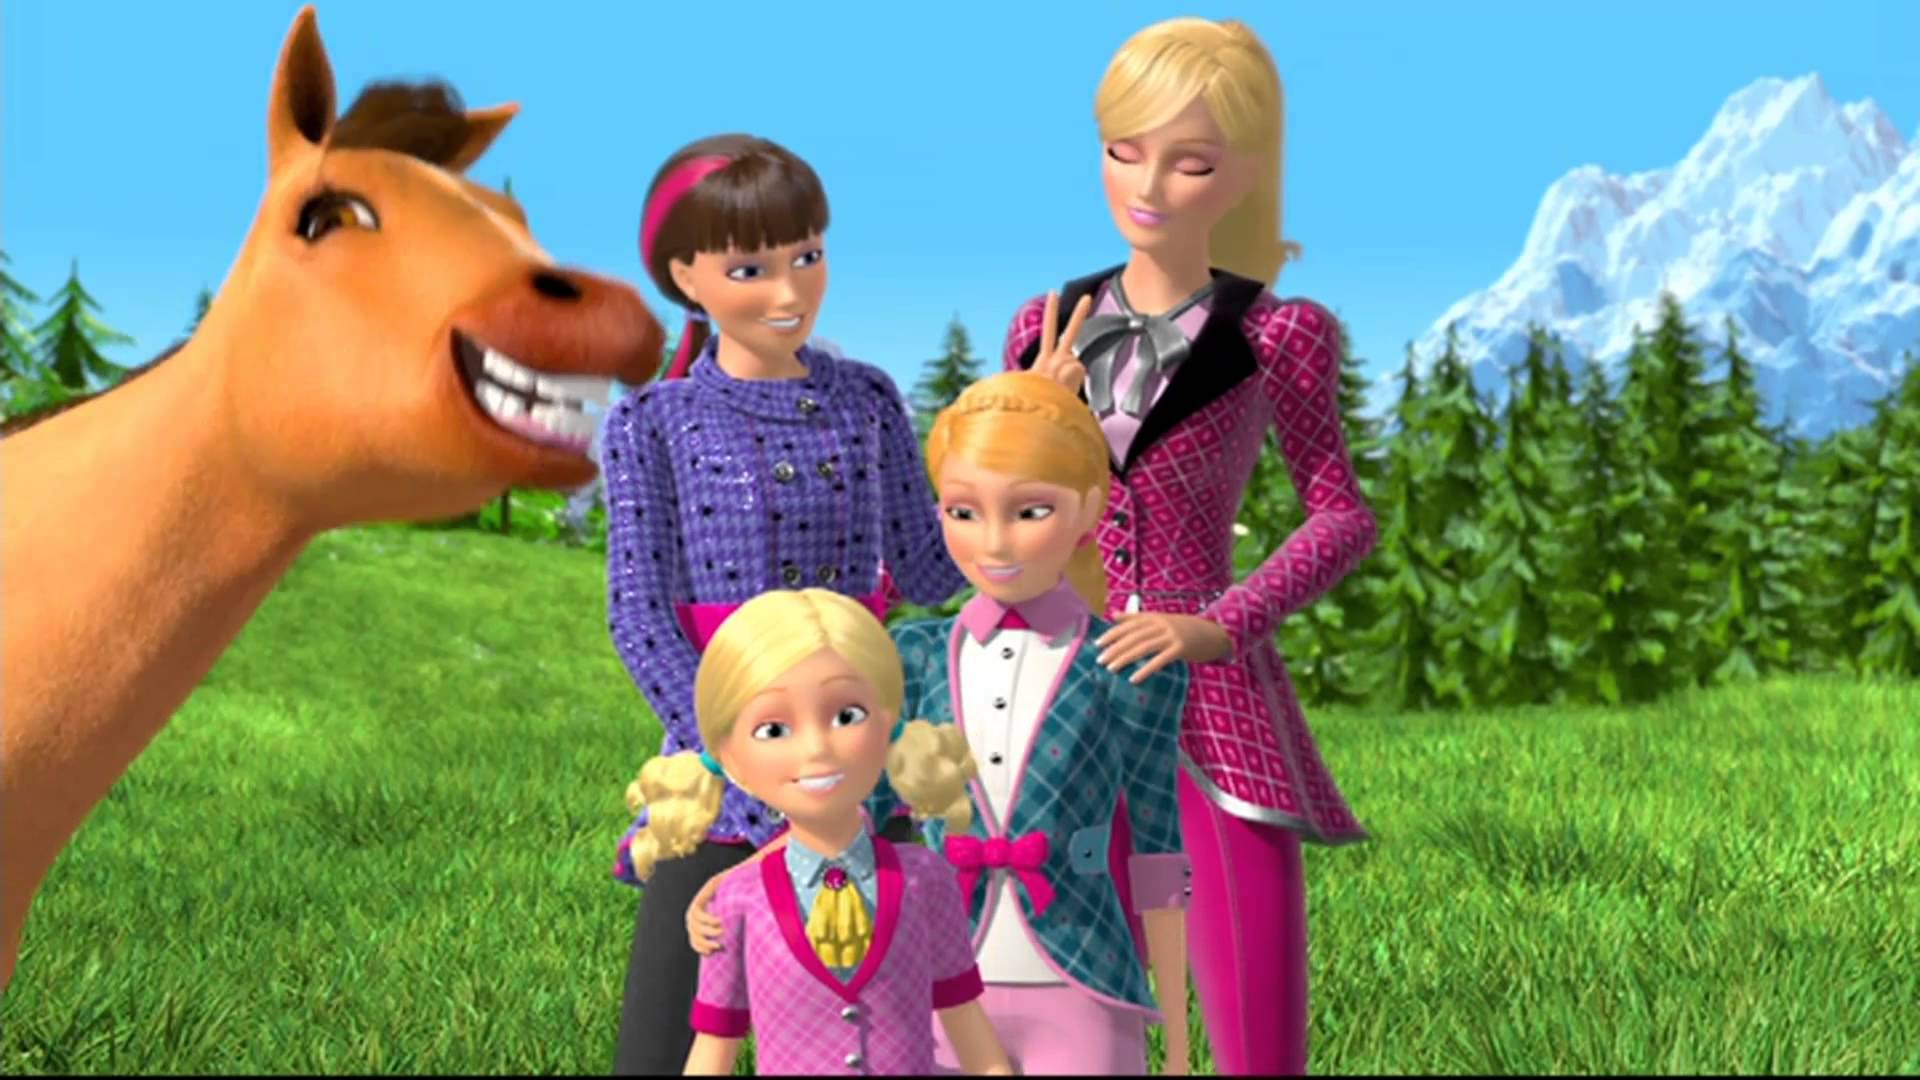 Barbie e as suas Irmãs numa Aventura de Cavalos - Filme 2013 - AdoroCinema